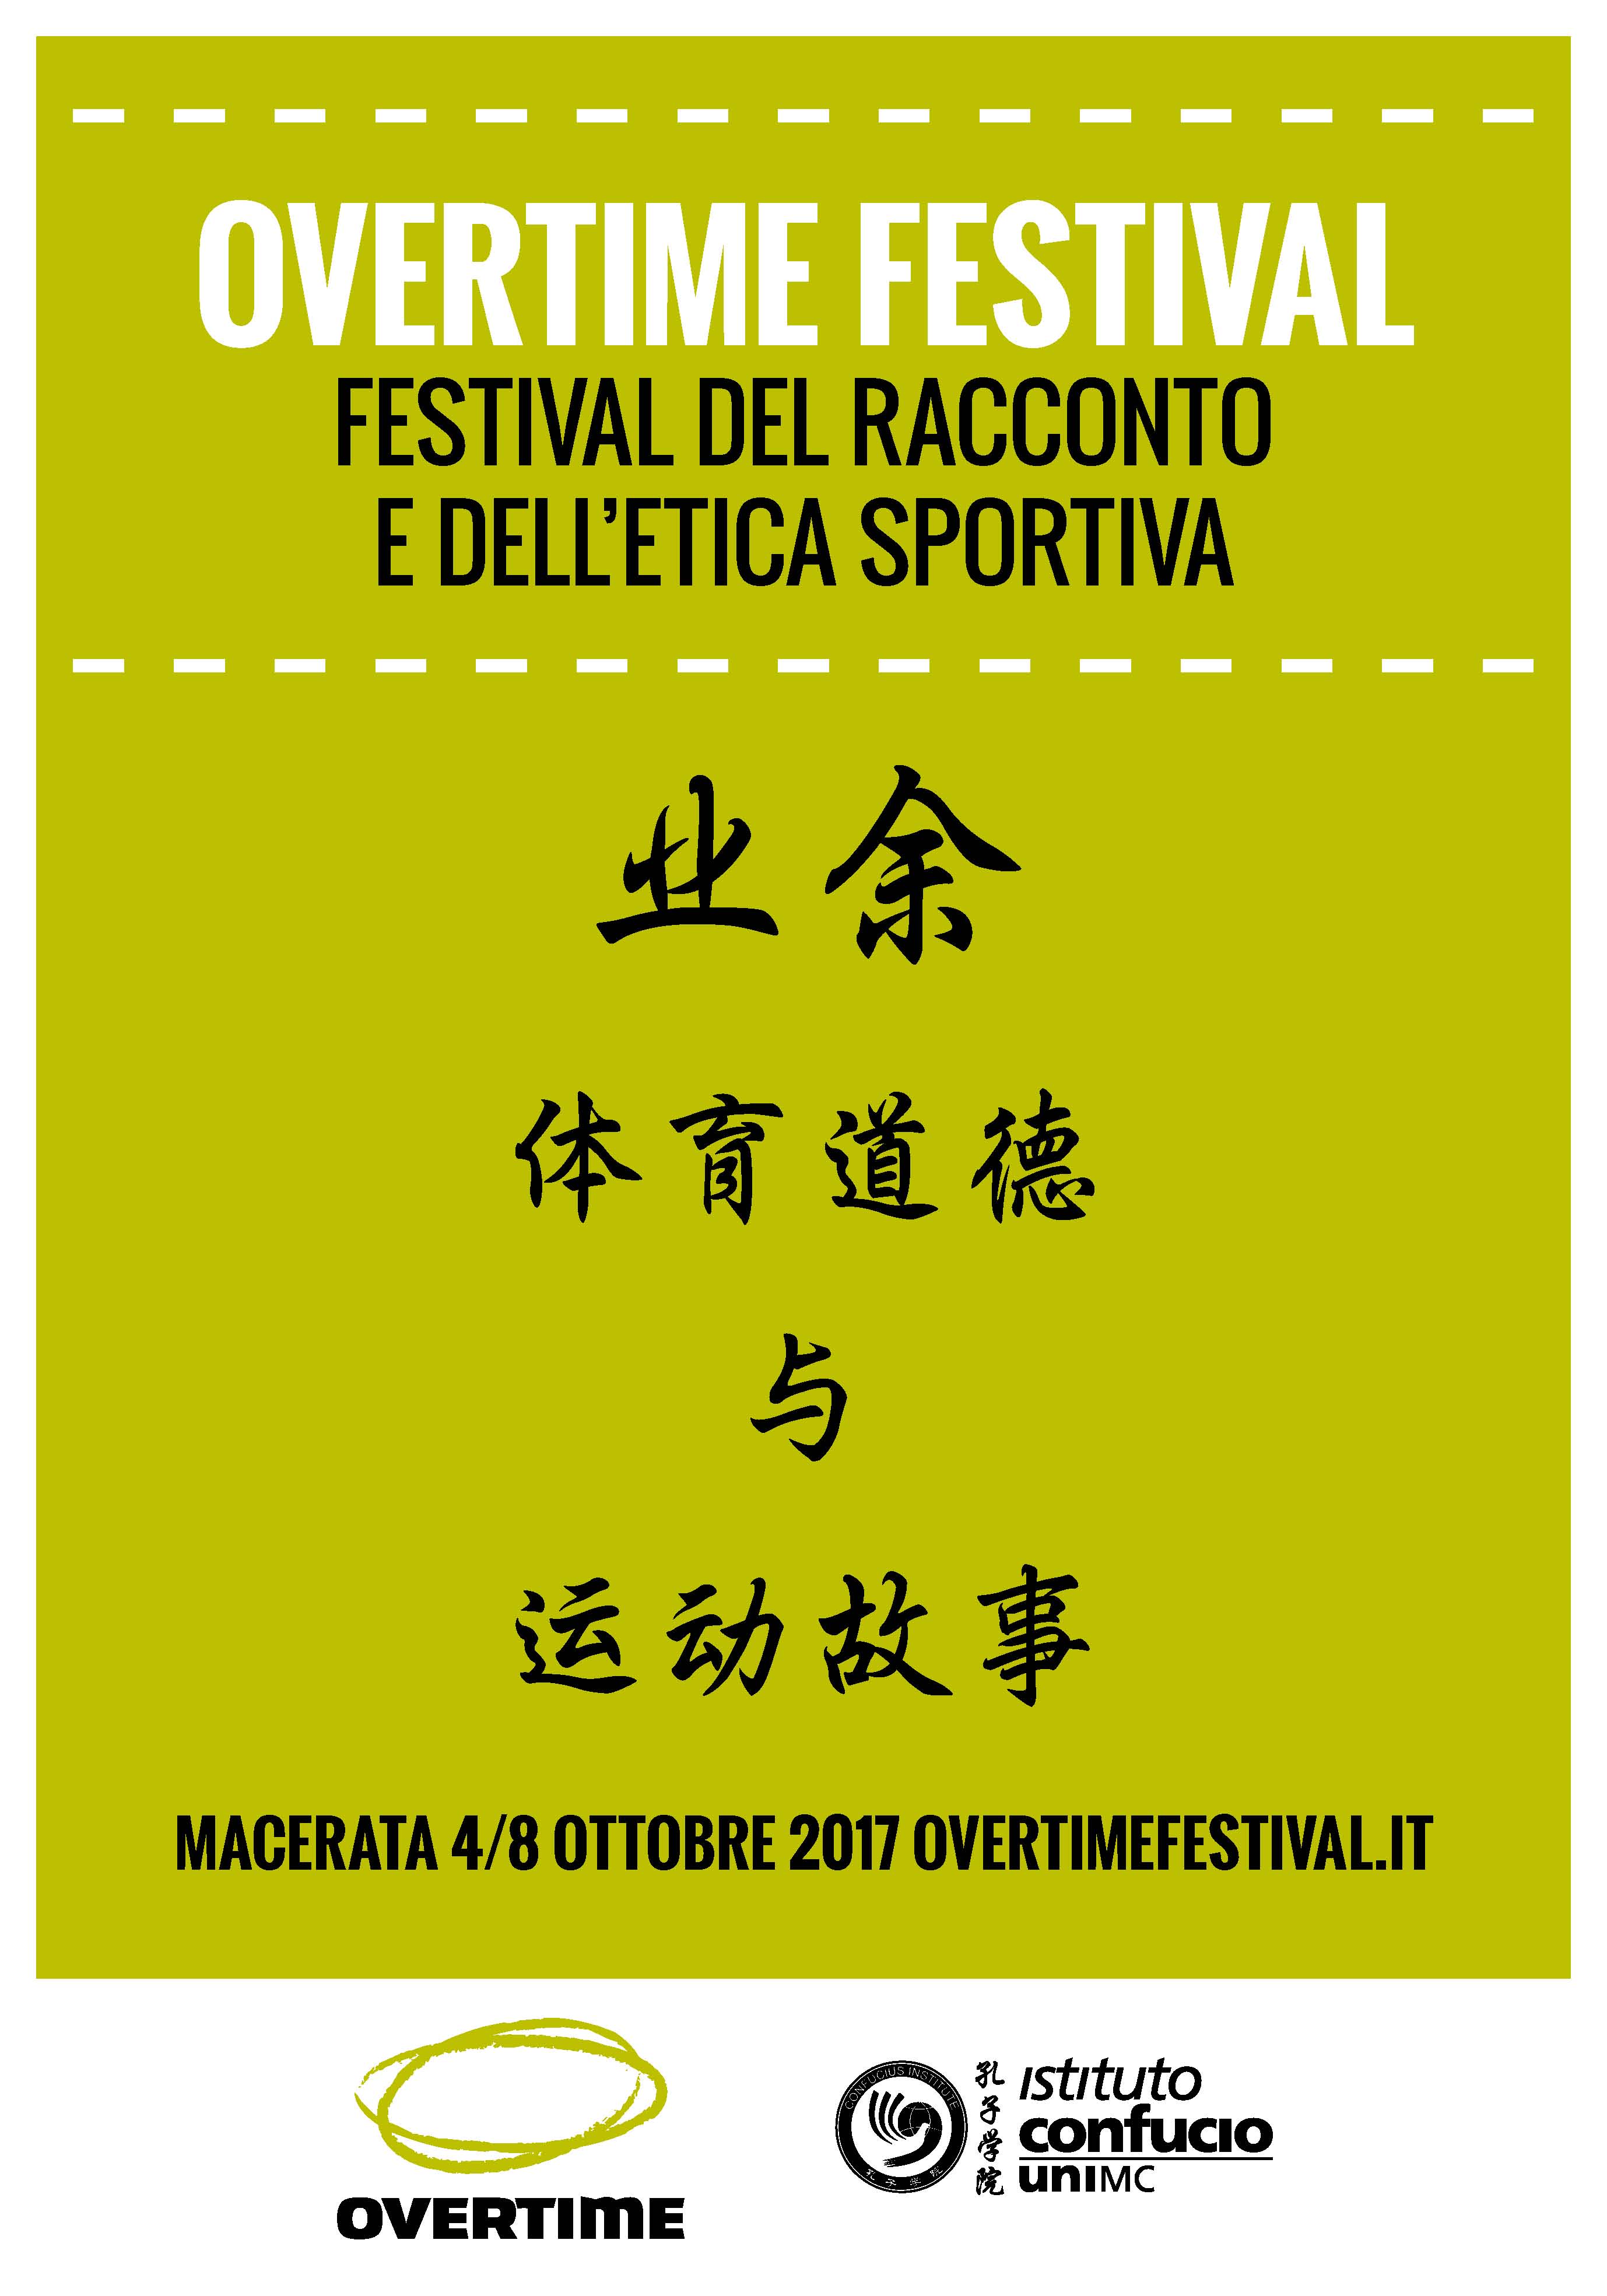 Istituto Confucio / Overtime Festival